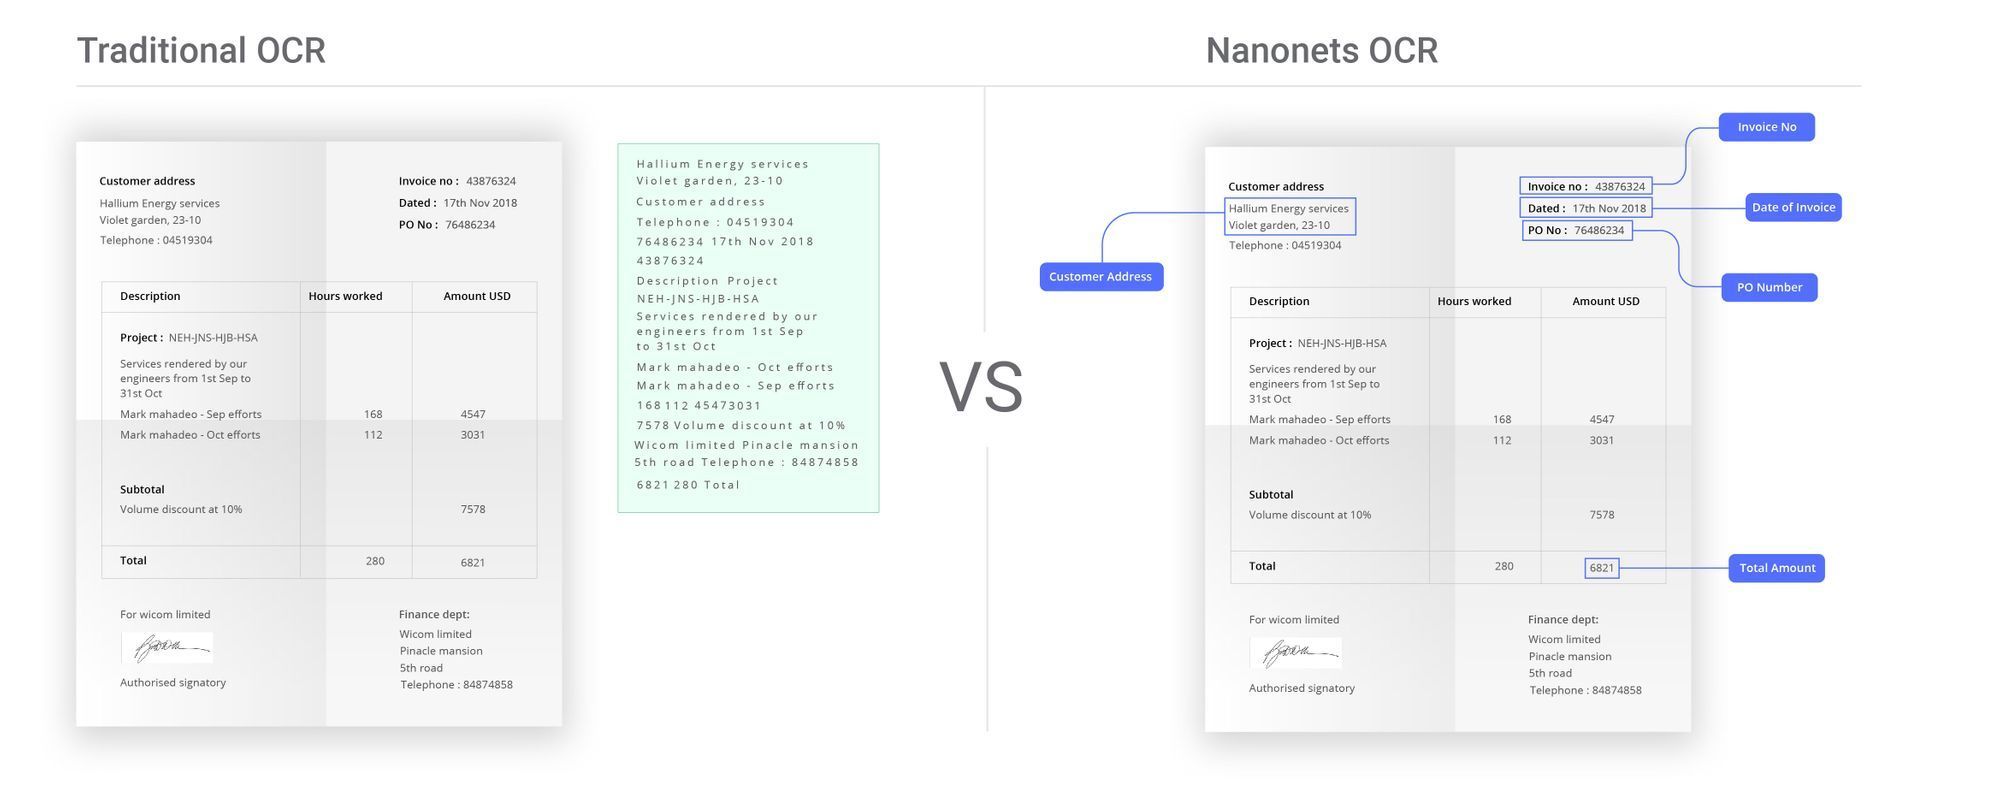 Зображення, яке ілюструє переваги Nanonets OCR для автоматизації введення замовлень порівняно з традиційними інструментами OCR